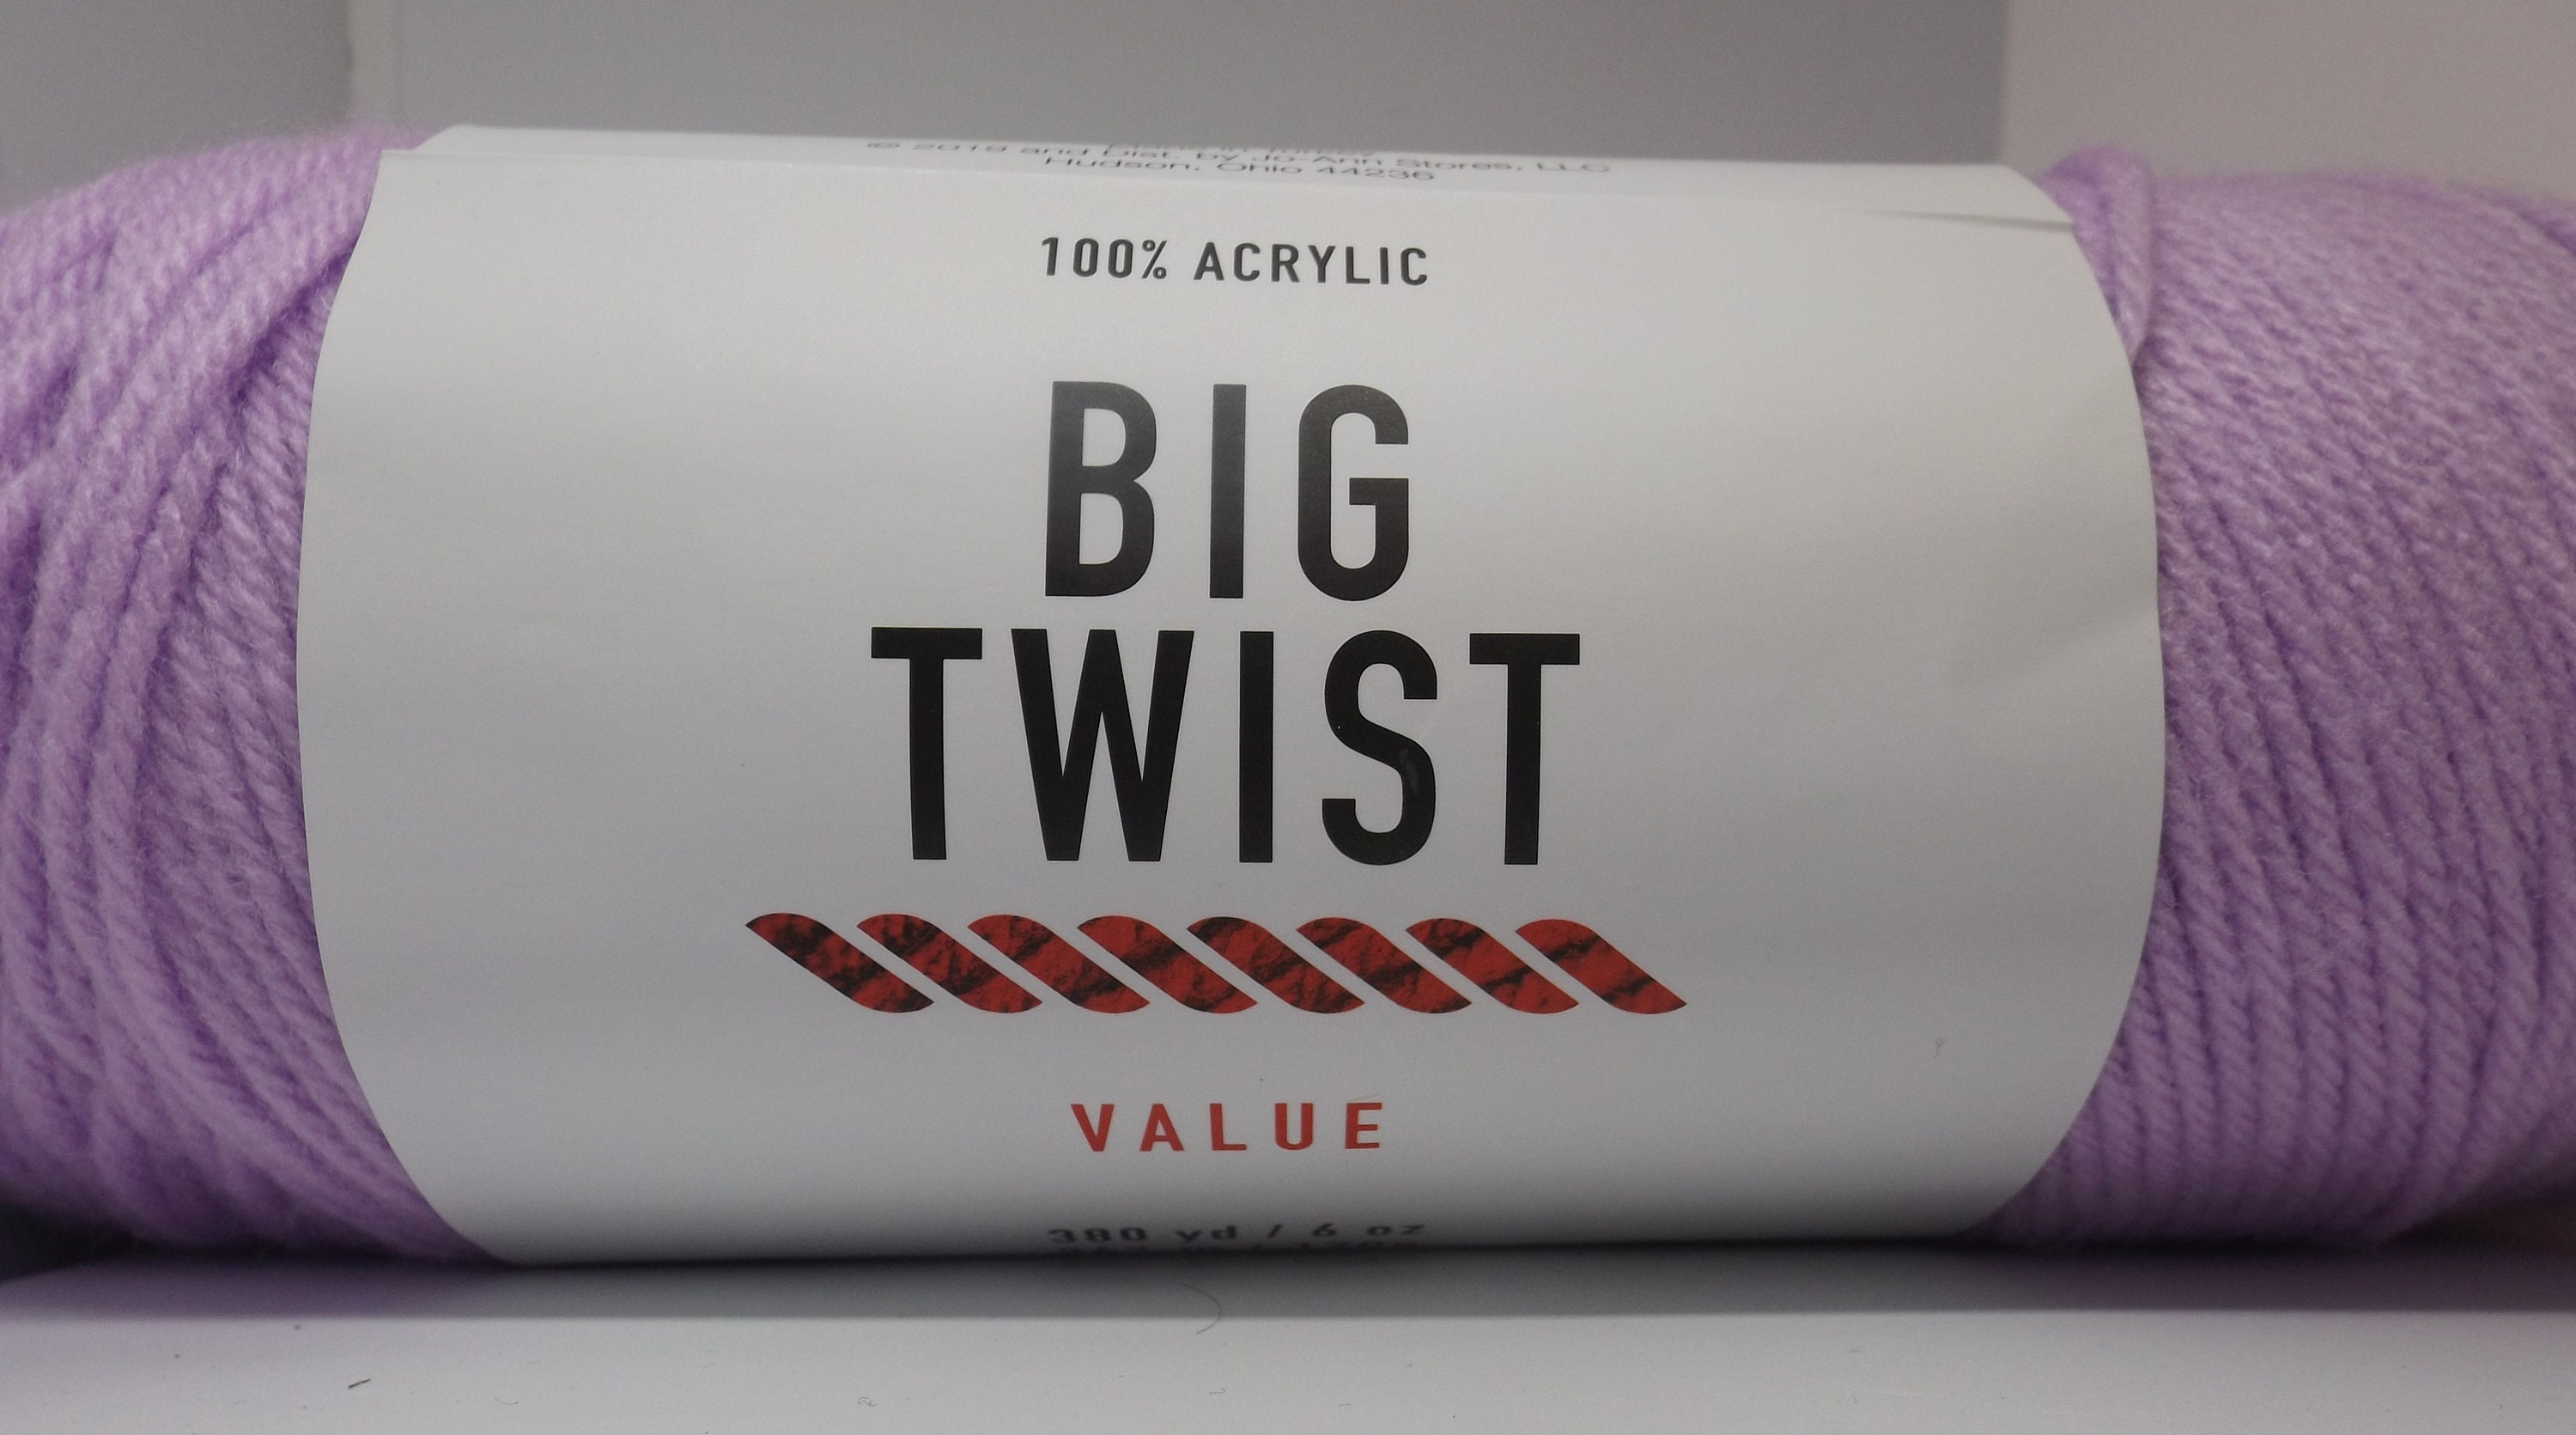 10pk Solid Soft Grey Medium Weight Acrylic 380yd Value Yarn by Big Twist by  Big Twist